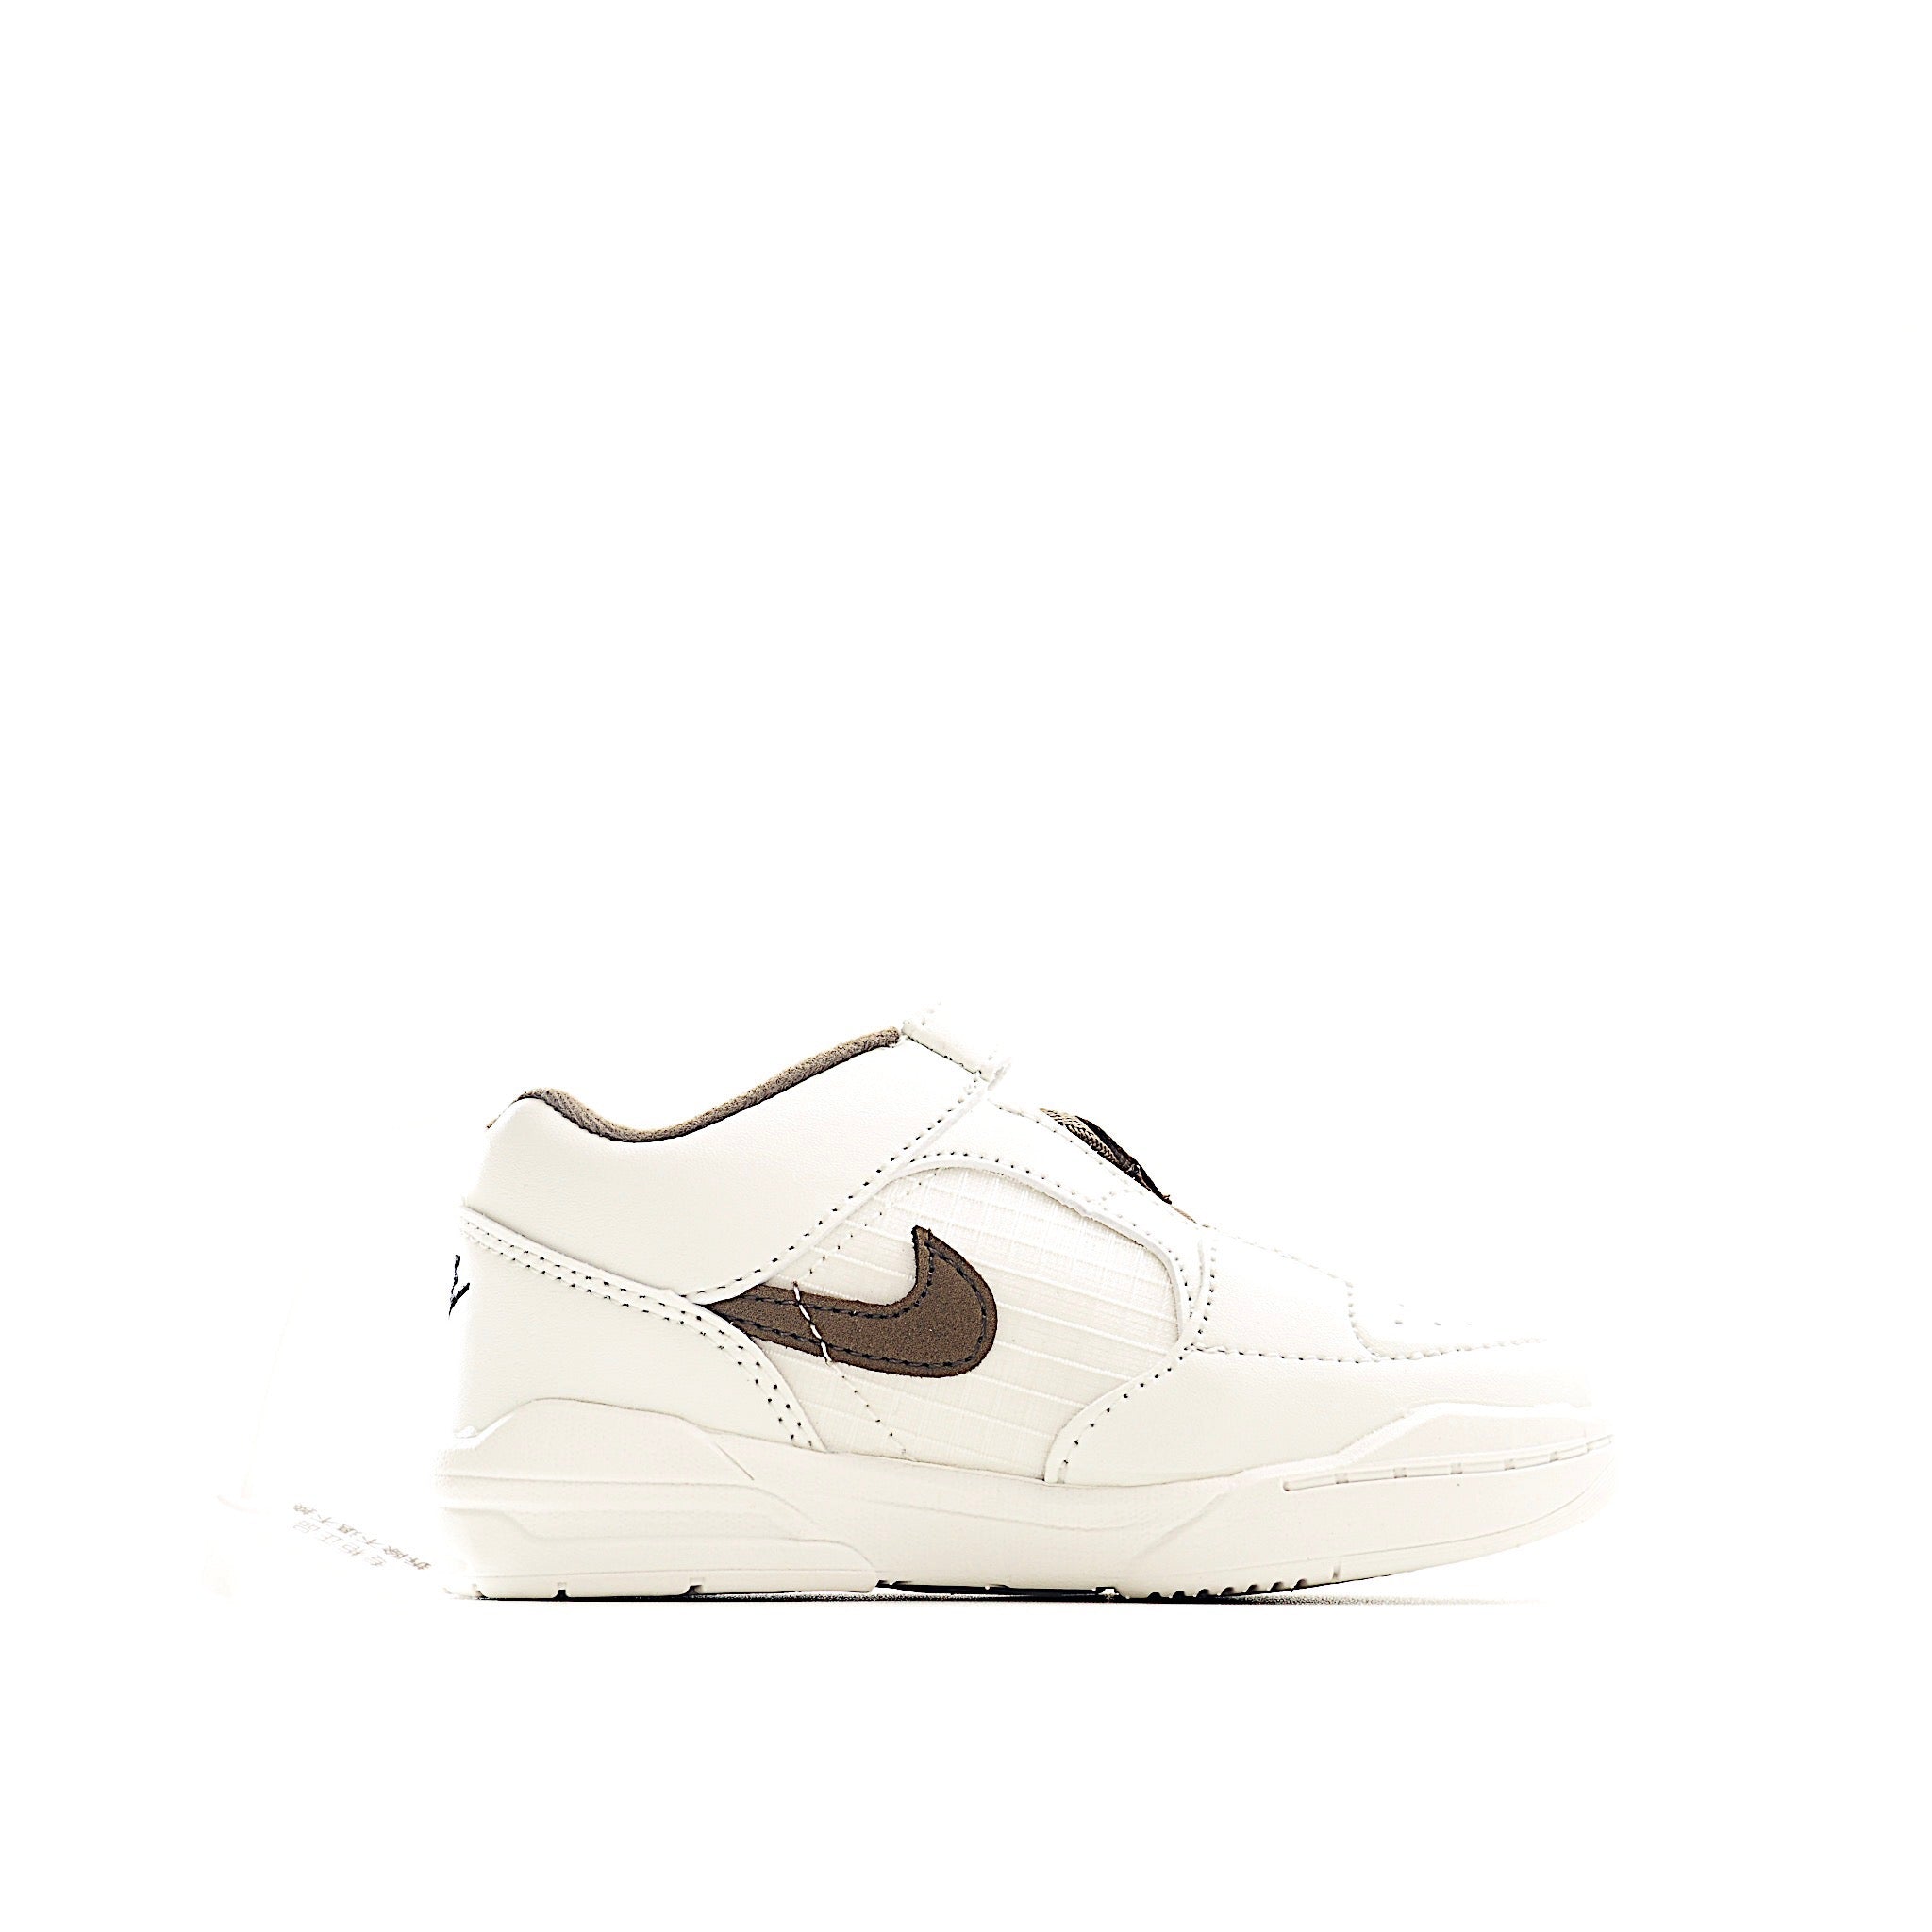 Nike jordan 90 brown shoes